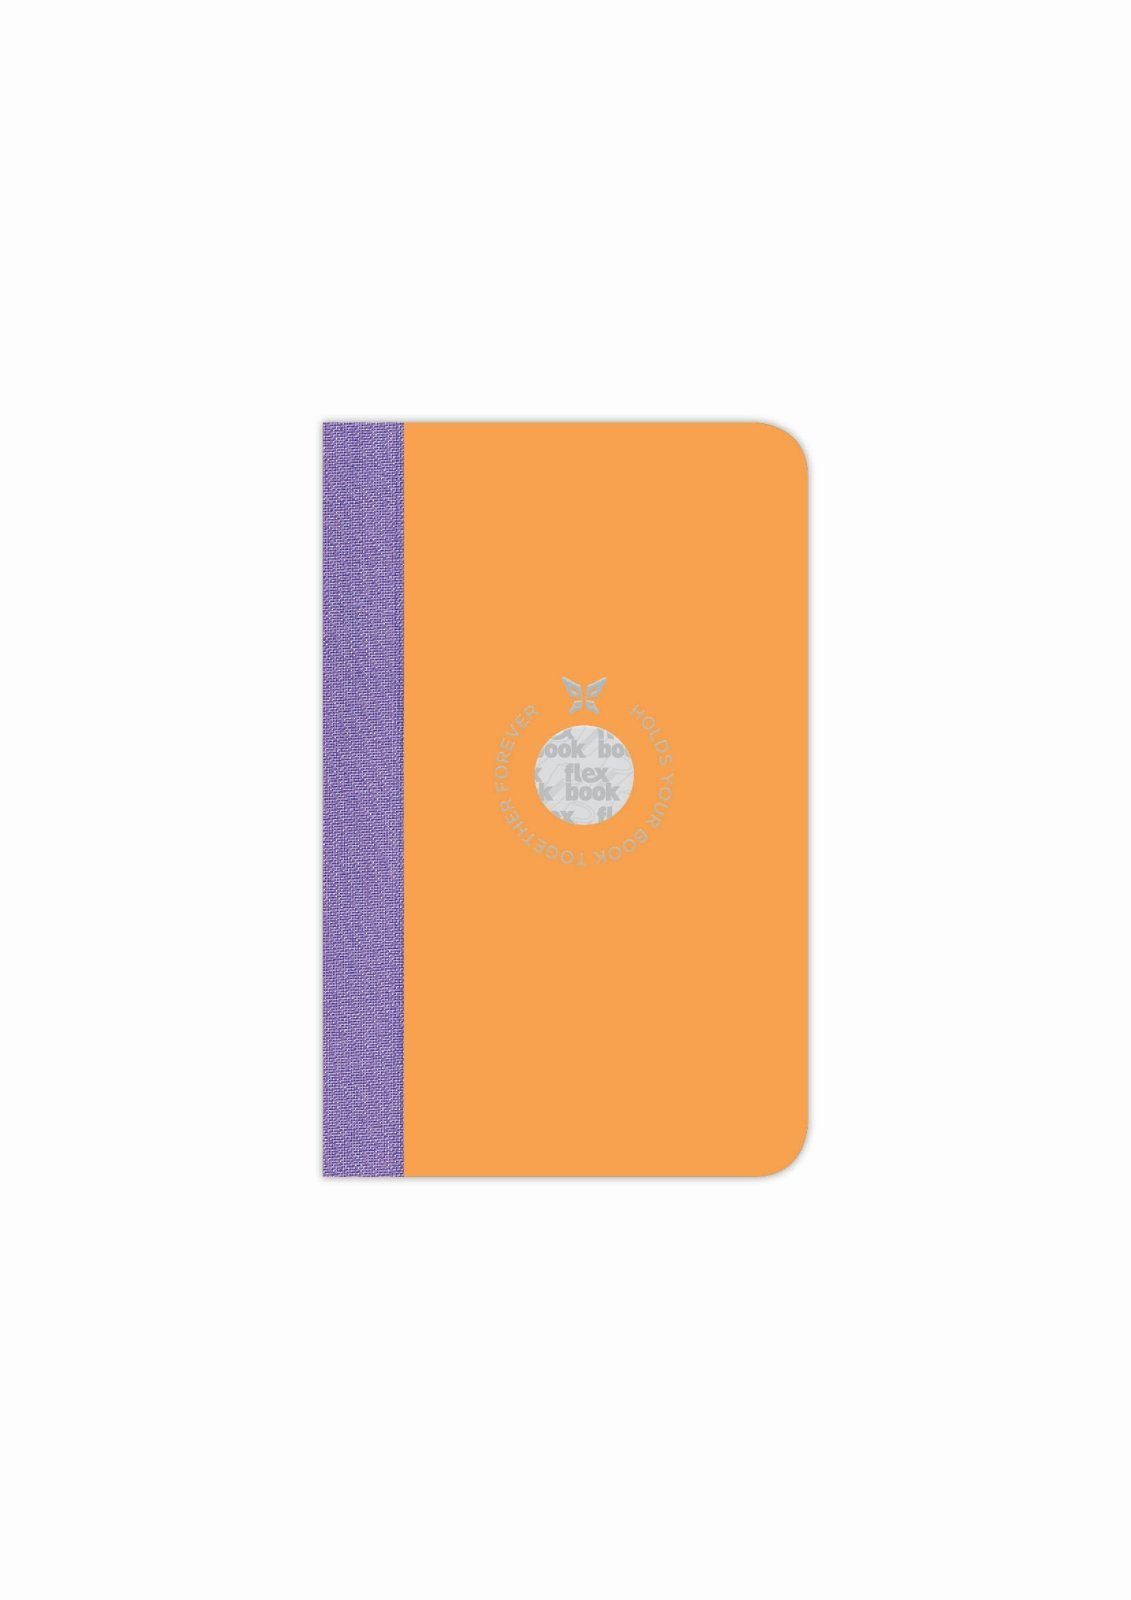 Flexbook Notizbuch Flexbook Smartbook Liniert 160 Seiten Ökopapiereinband viele Größen/Fa Orange 9*14cm